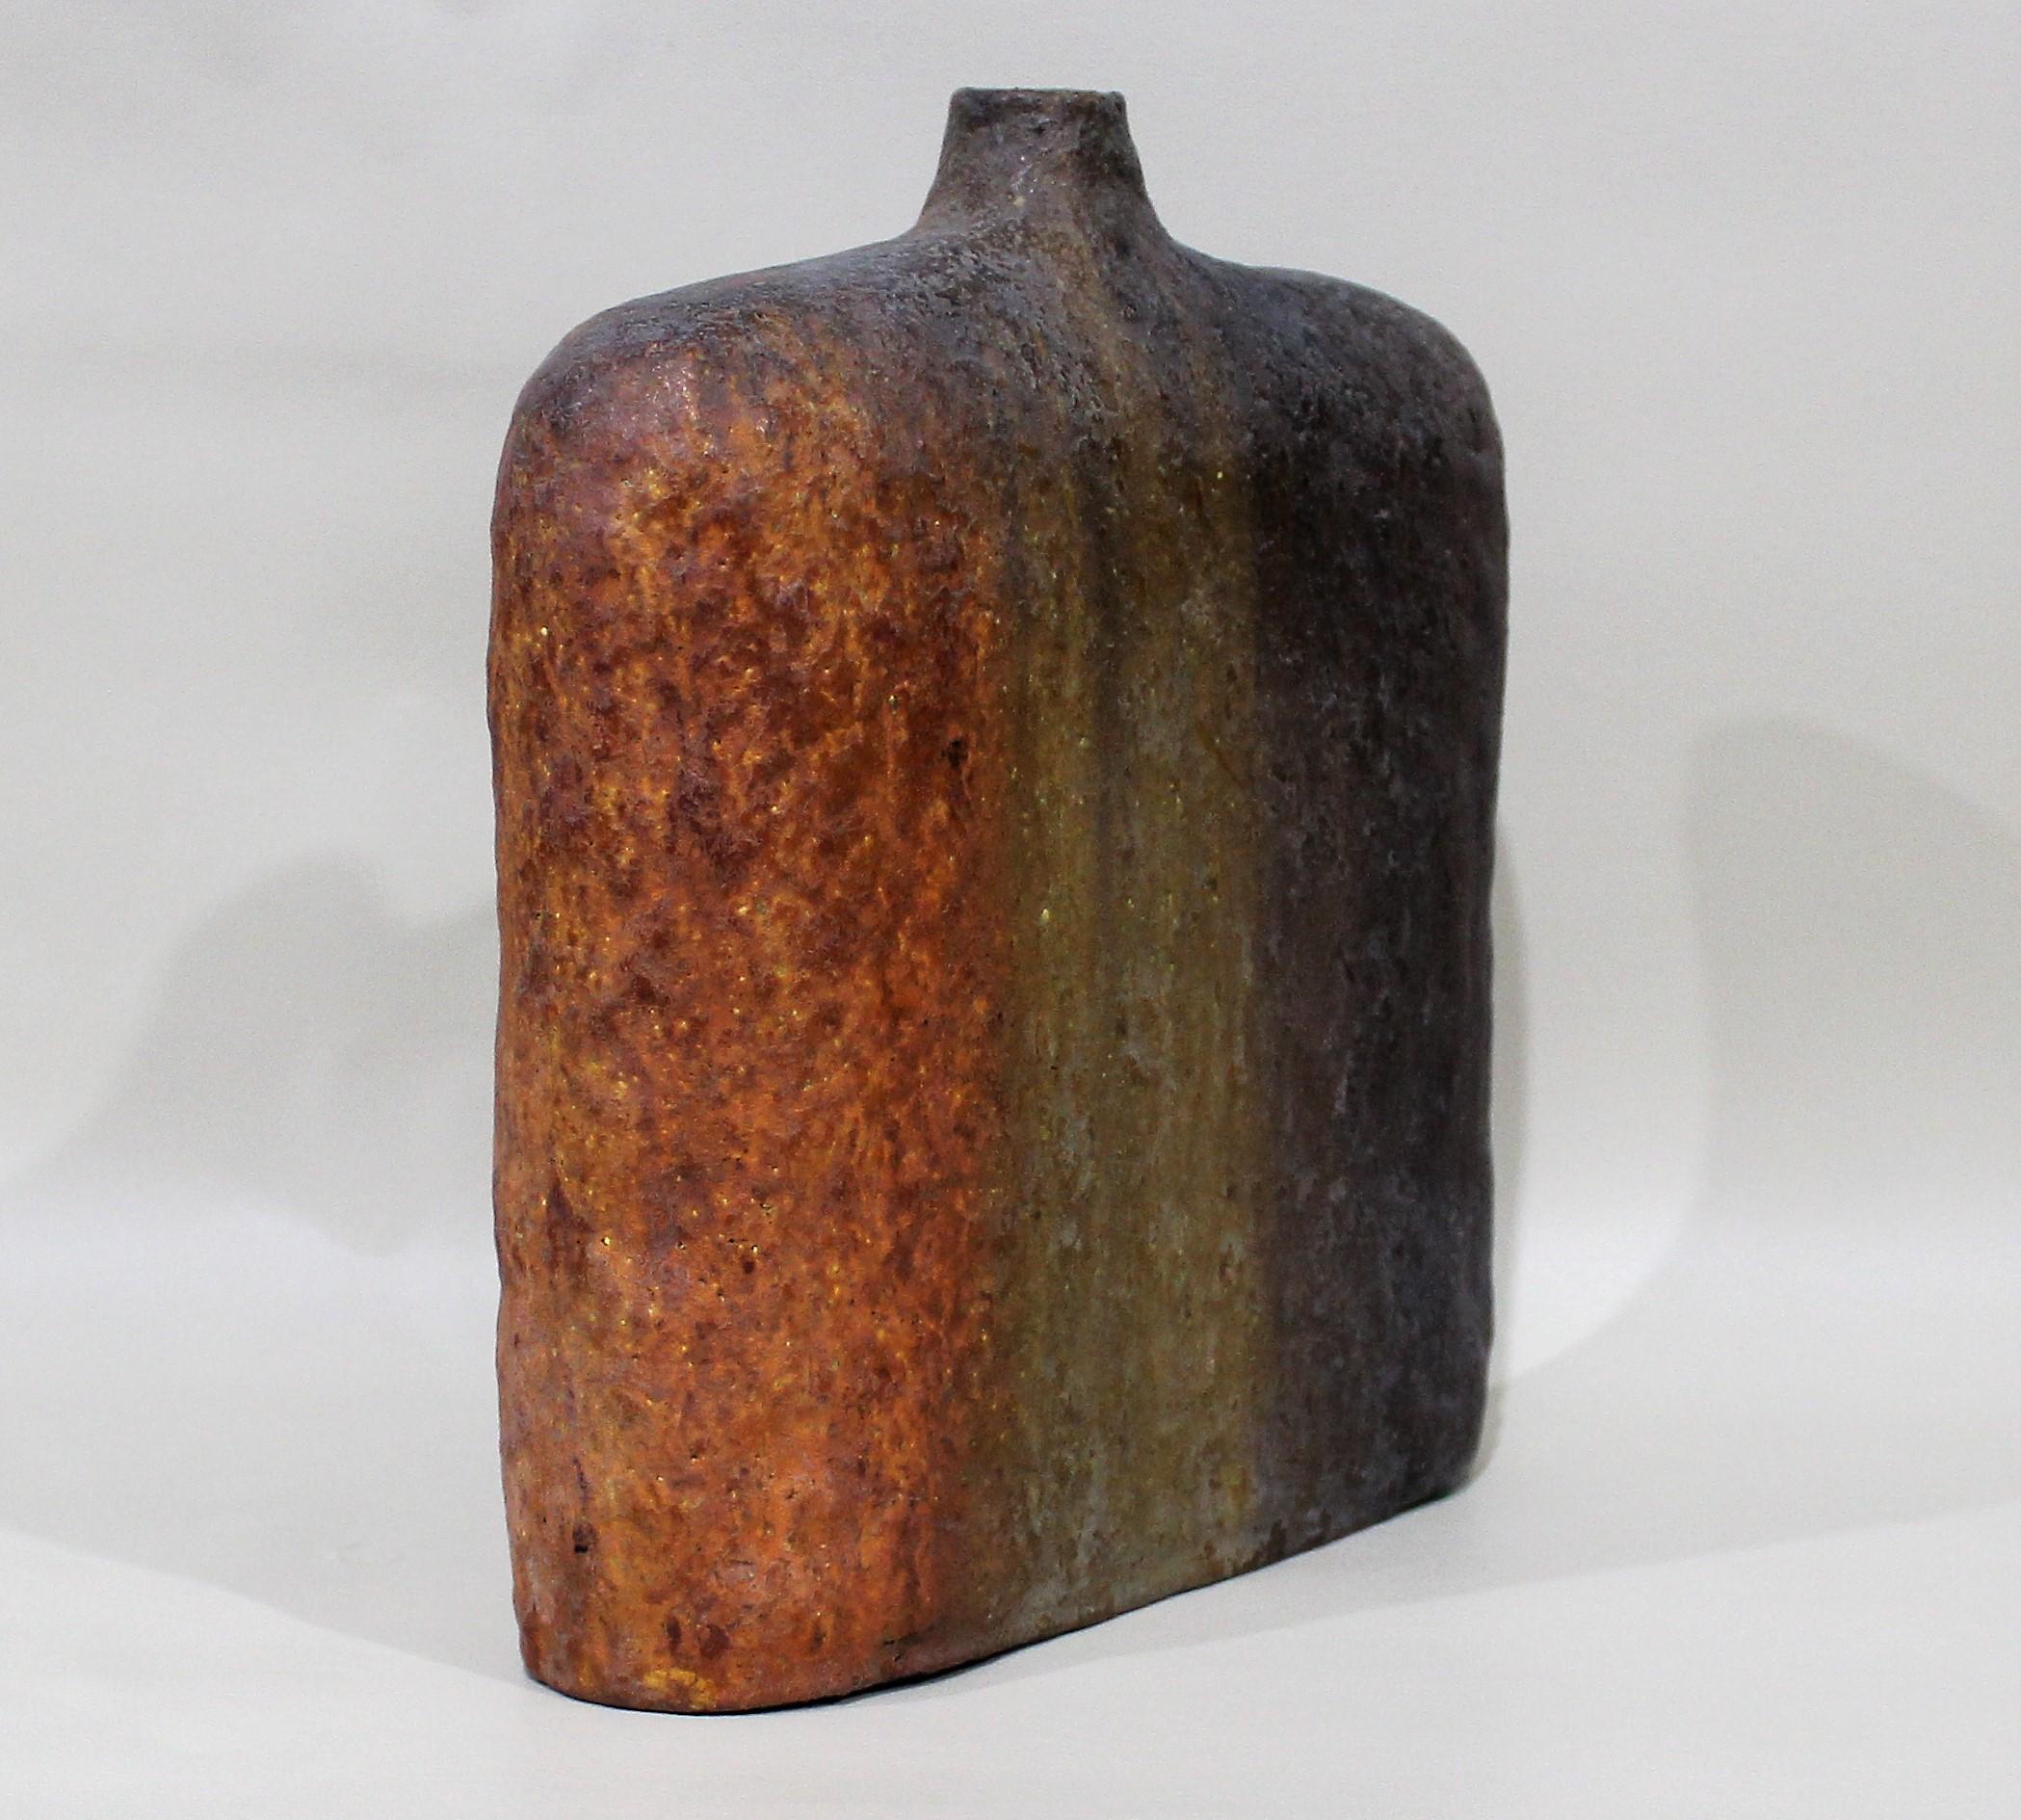 Marcelllo Fantoni ceramic vase for Raymor.